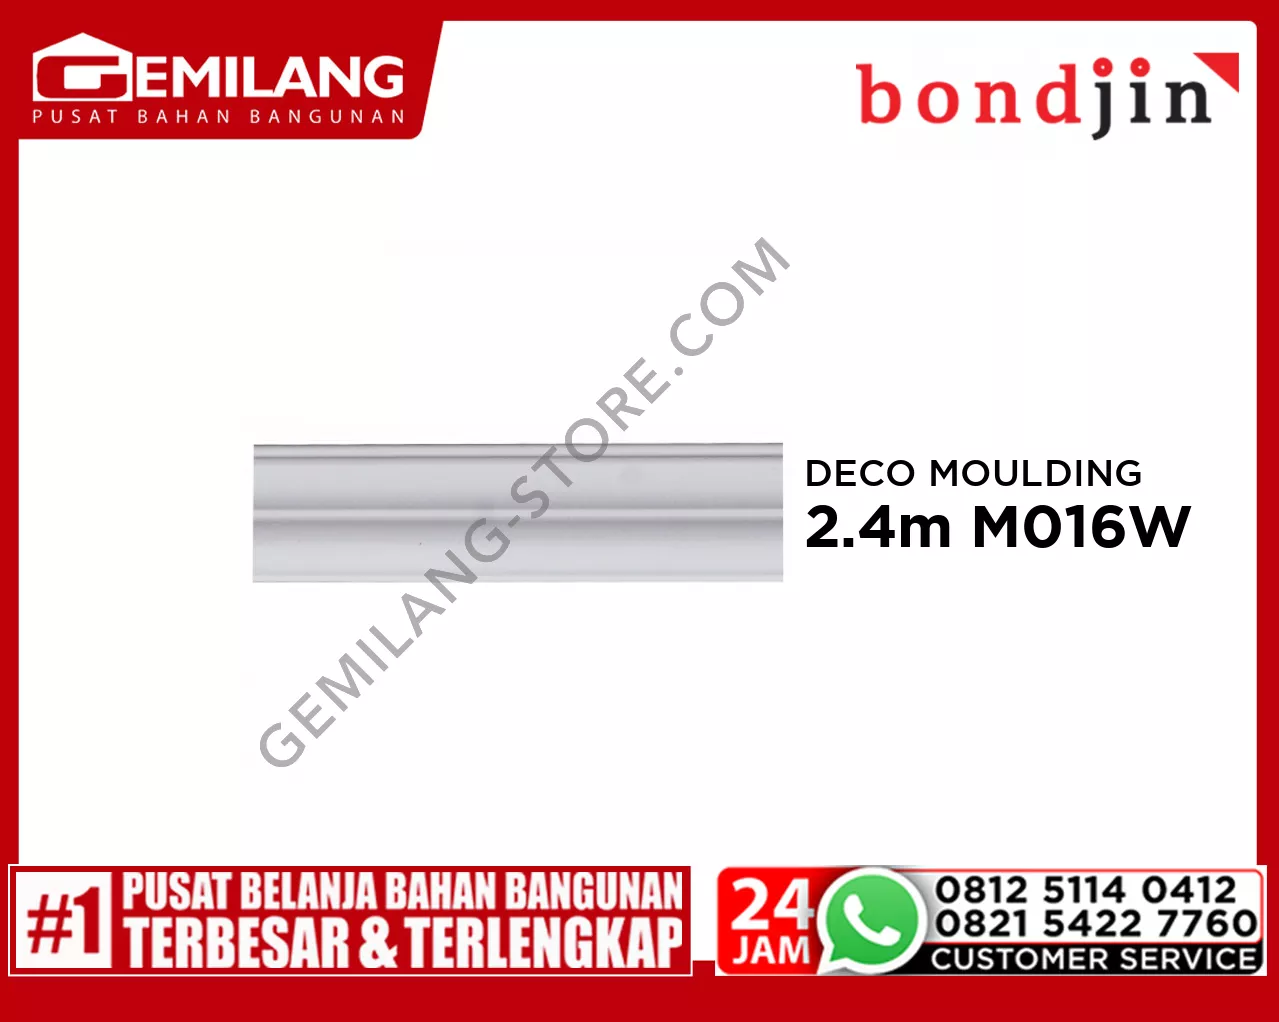 BONDJIN DECO MOULDING 2.4M M016-W